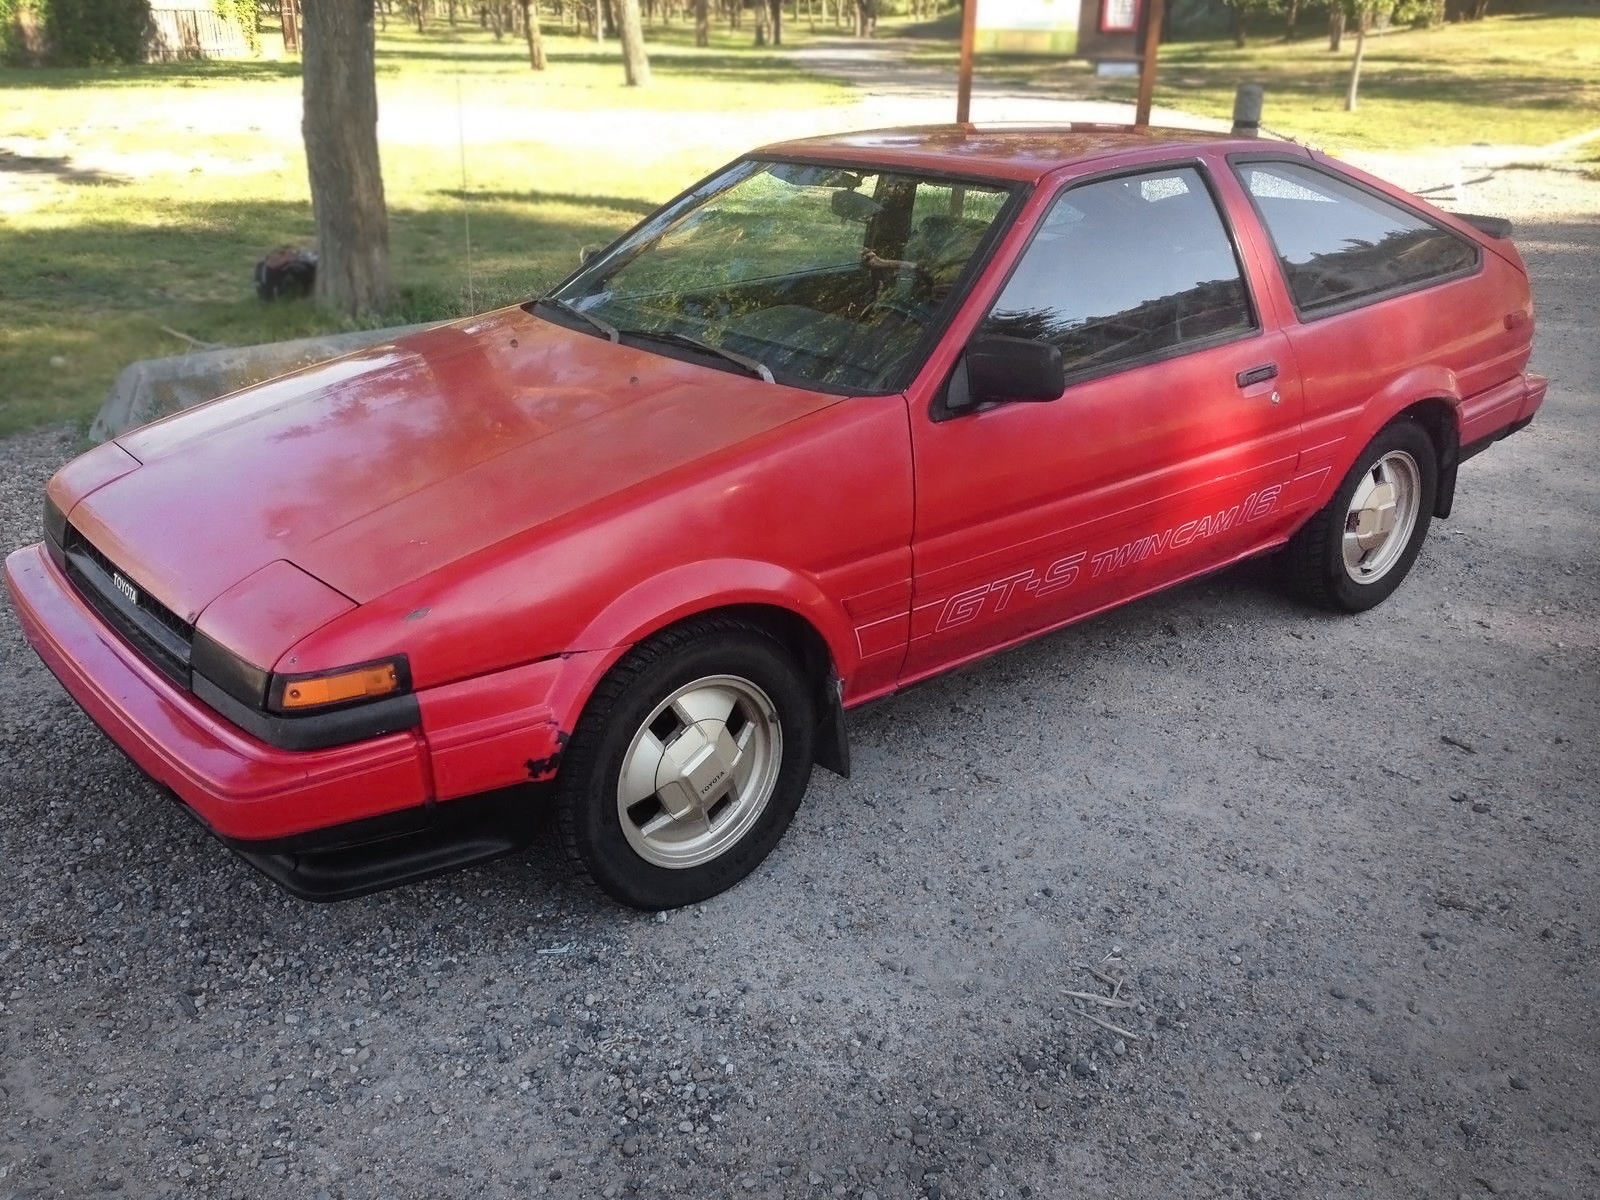 070916-Barn-Finds-1985-Toyota-Corolla-Sport-GTS-1.jpg